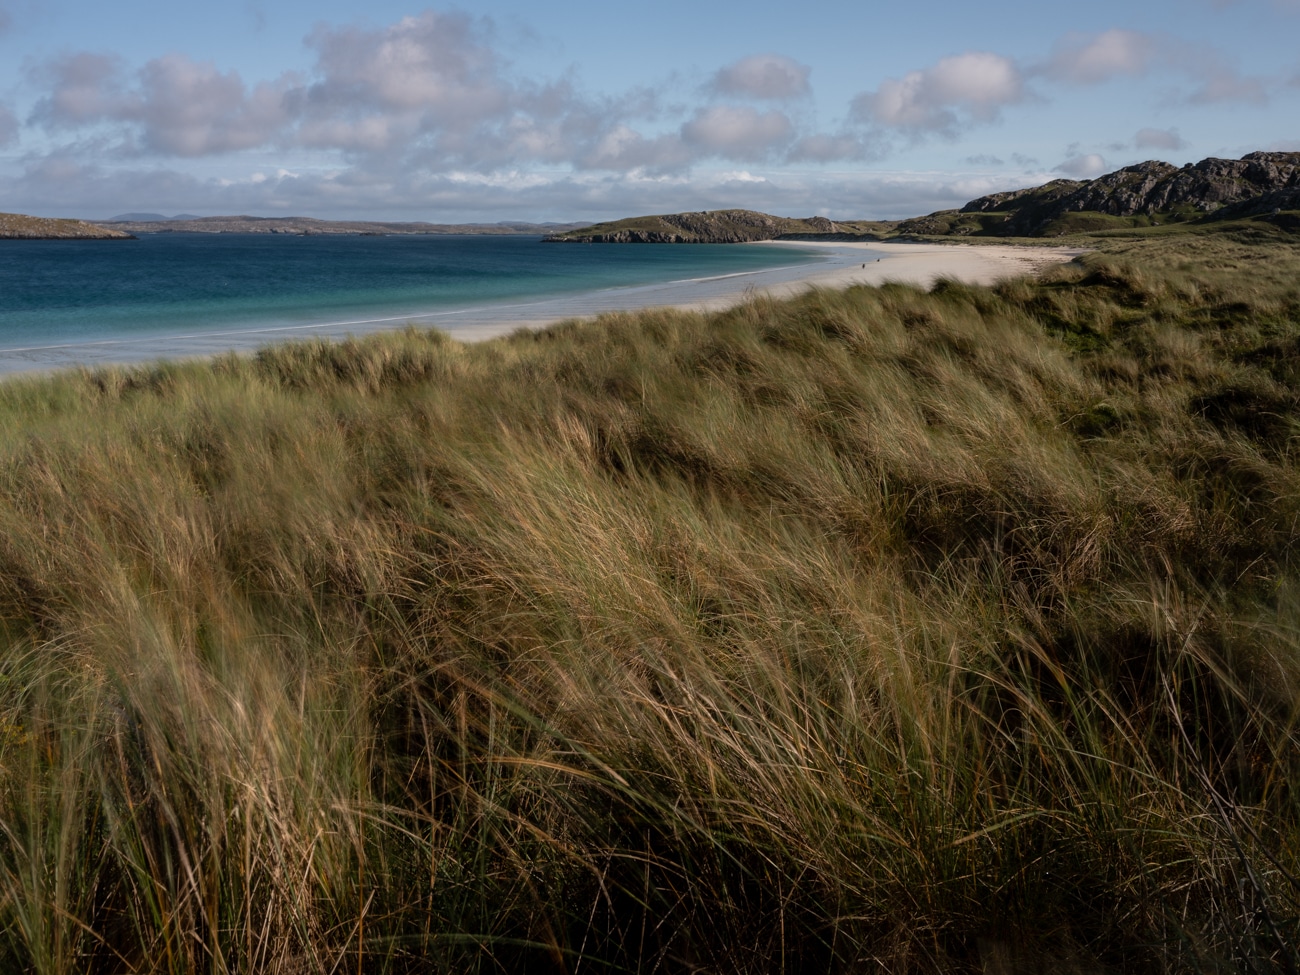 Landscape photography workshop, The Outer Hebrides